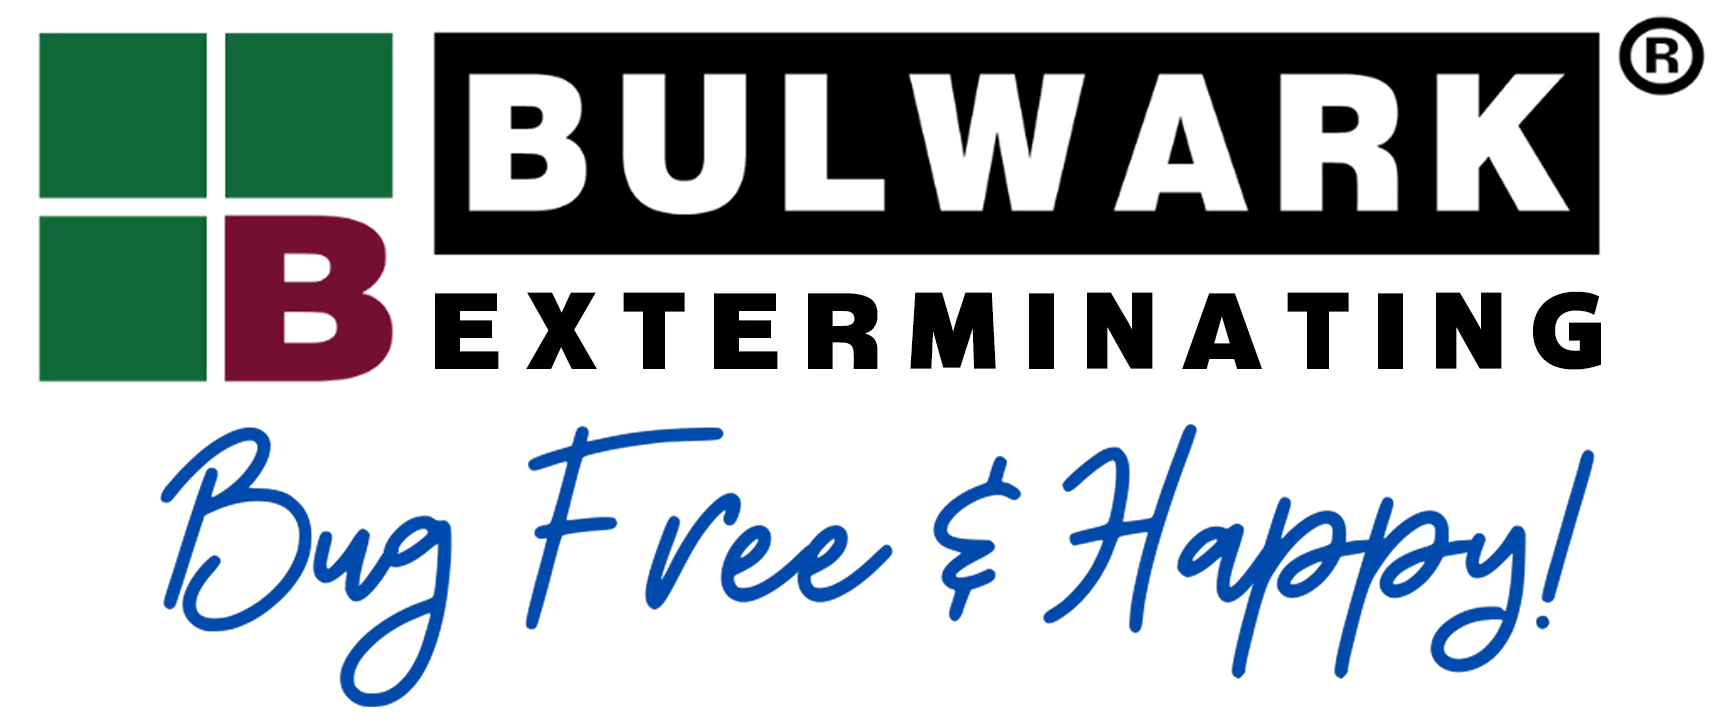 Bulwark Exterminating in Corpus Christi Logo